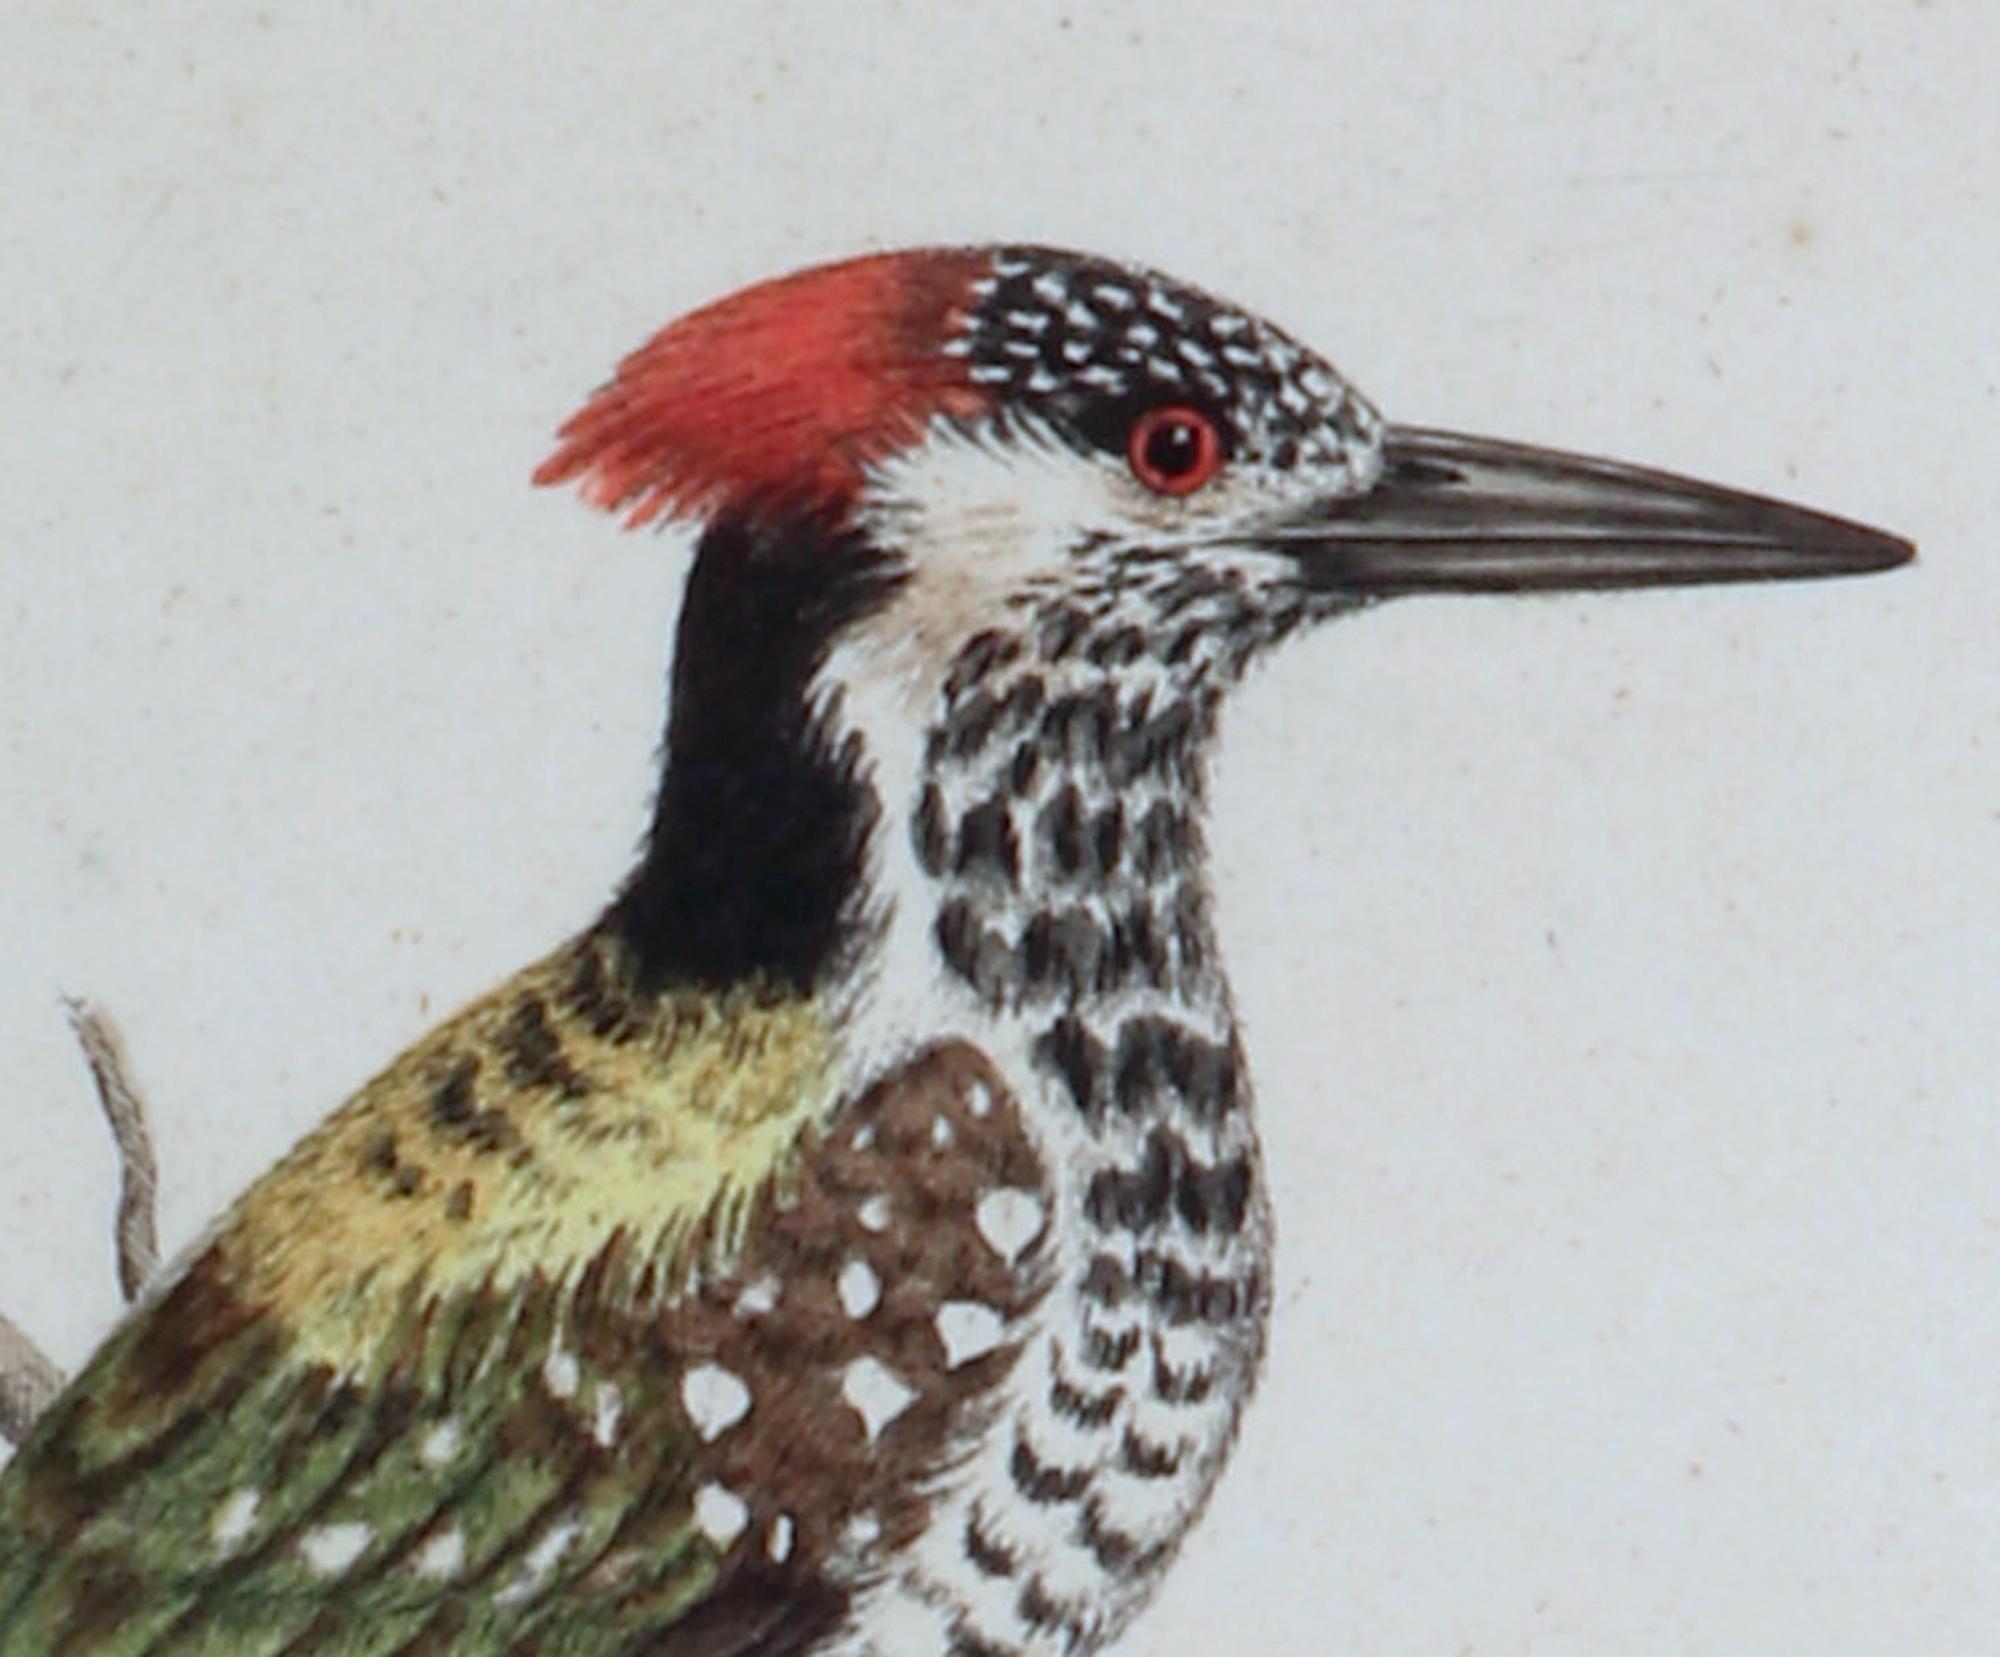 George Edwards Gravuren eines Vogels,
Specht, Picus Bengalensis,
#82,
1745

Ein von George Edwards handkolorierter Stich eines Spechtes.

Abmessungen: 16 3/4 Zoll x 14 Zoll breit x 1 Zoll tief.